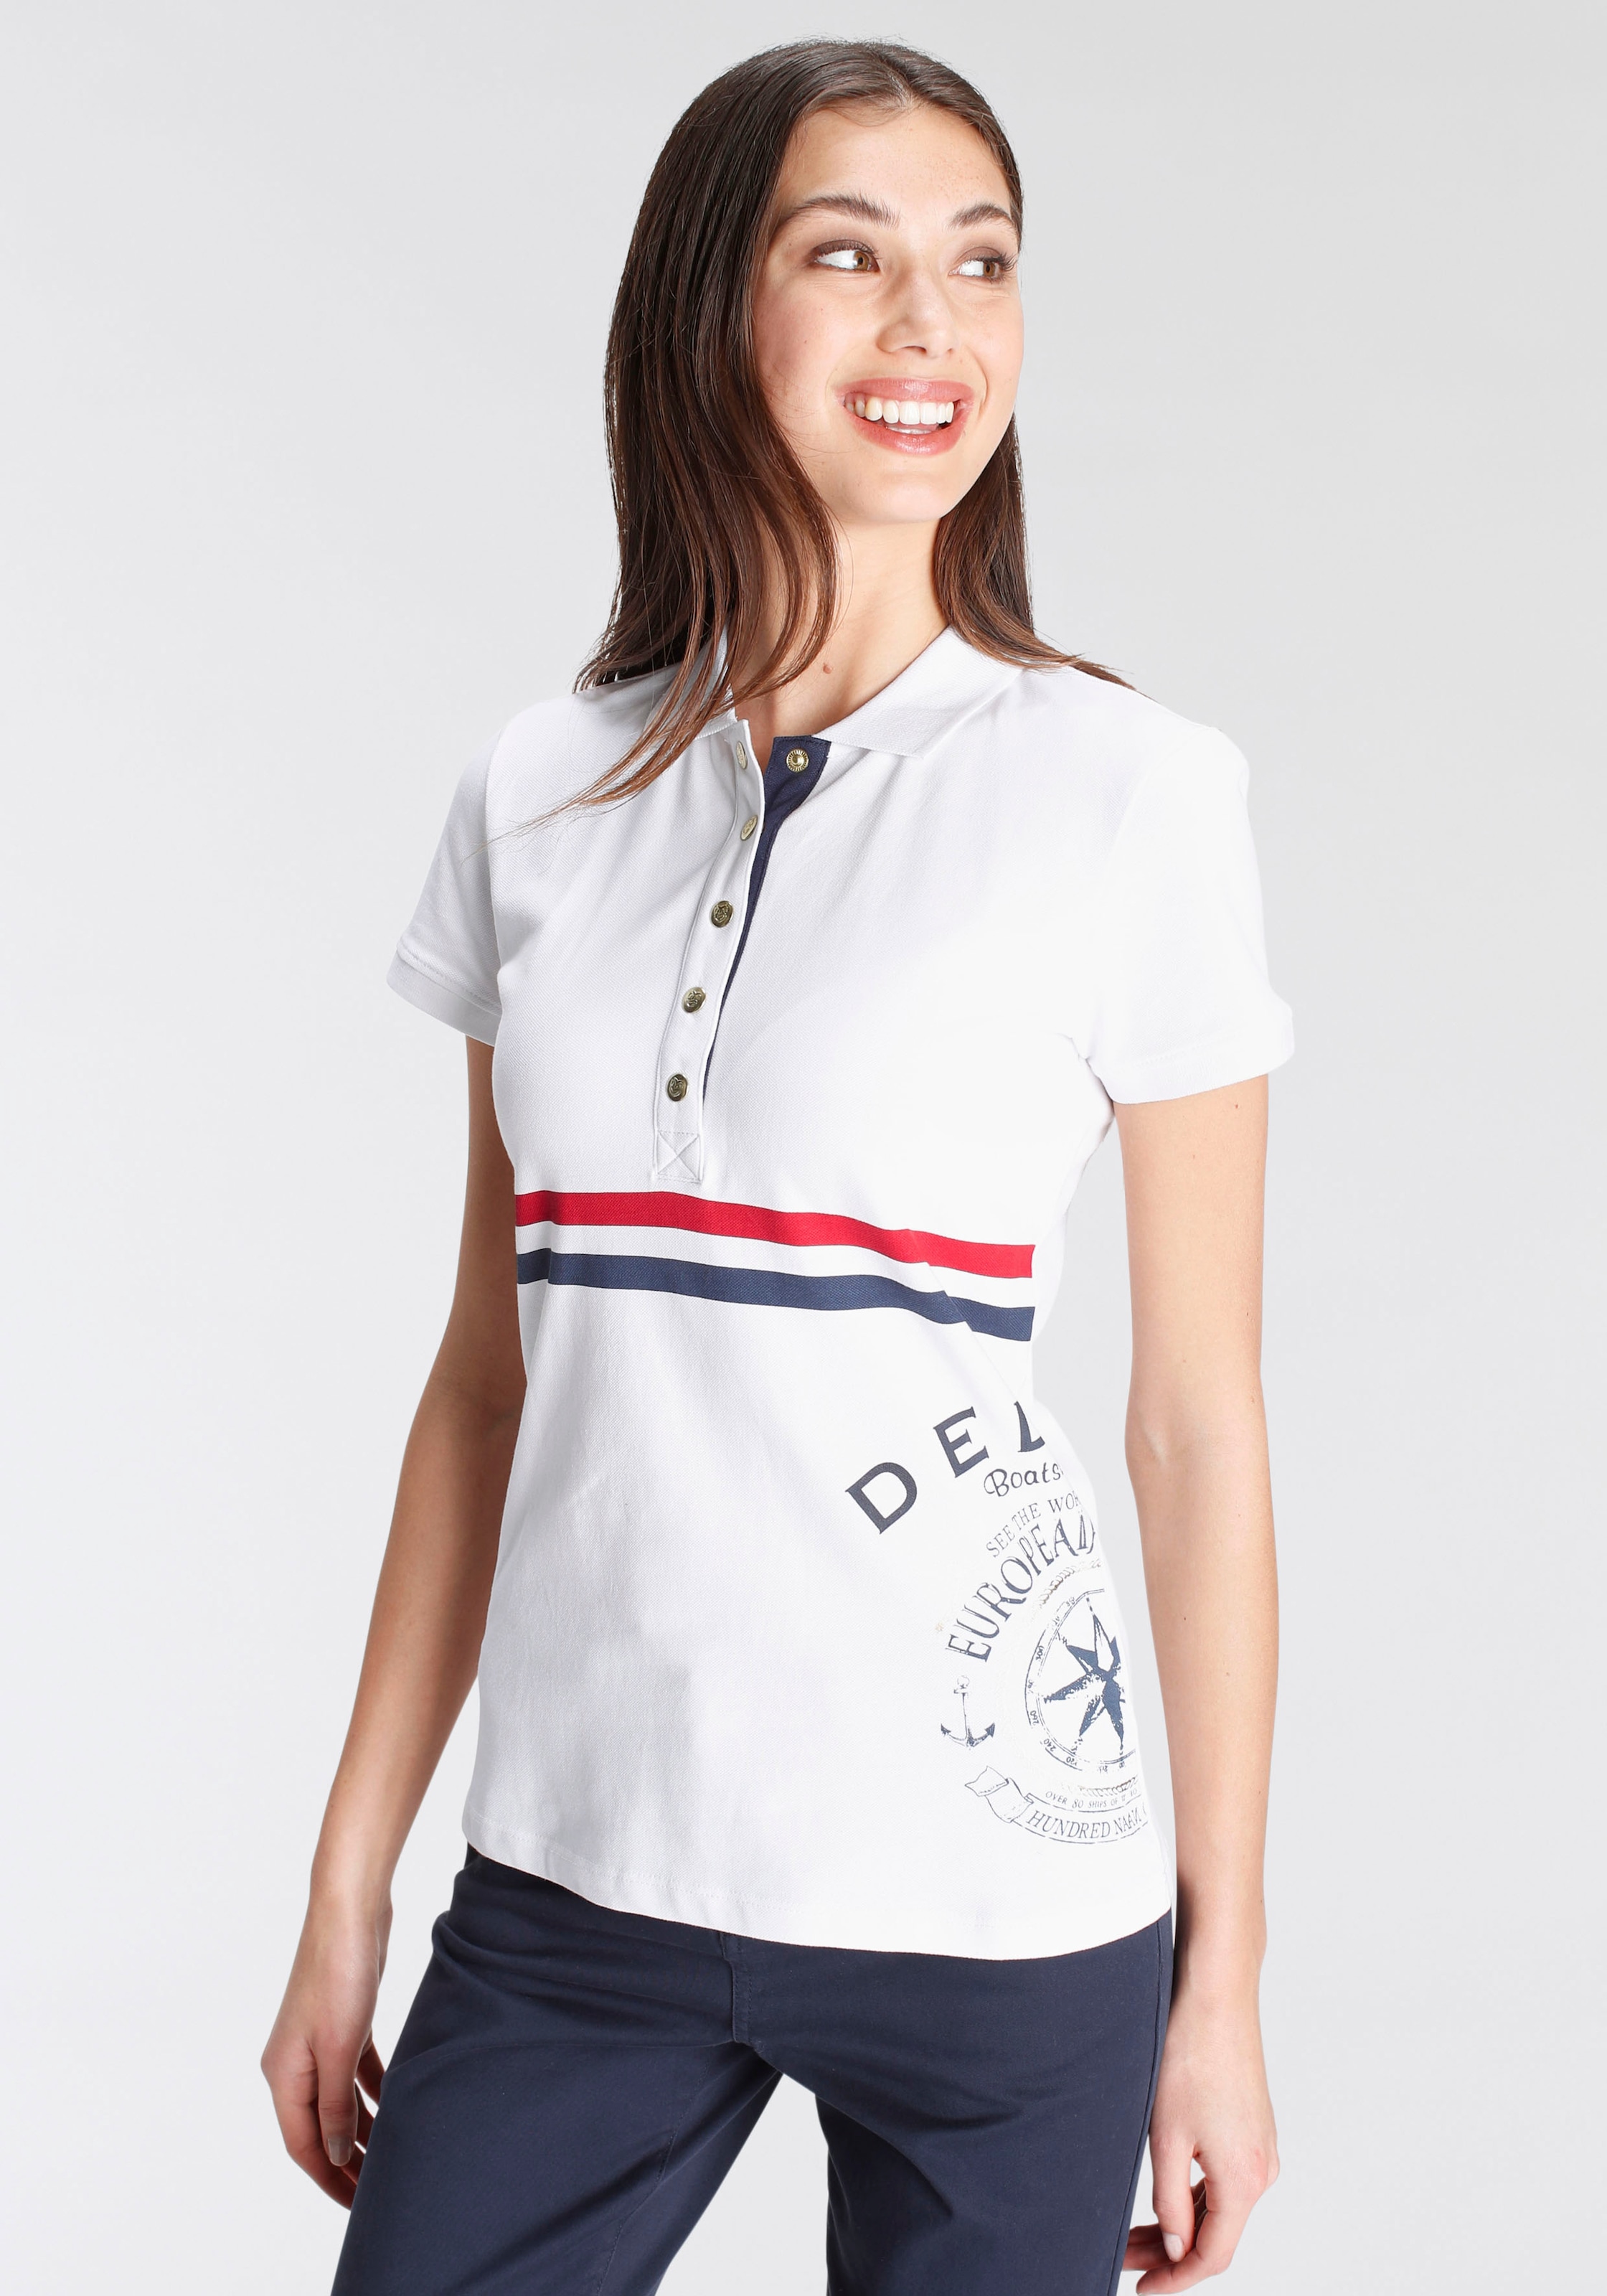 DELMAO Poloshirt, in edlem maritimen Look - NEUE MARKE! für kaufen | BAUR